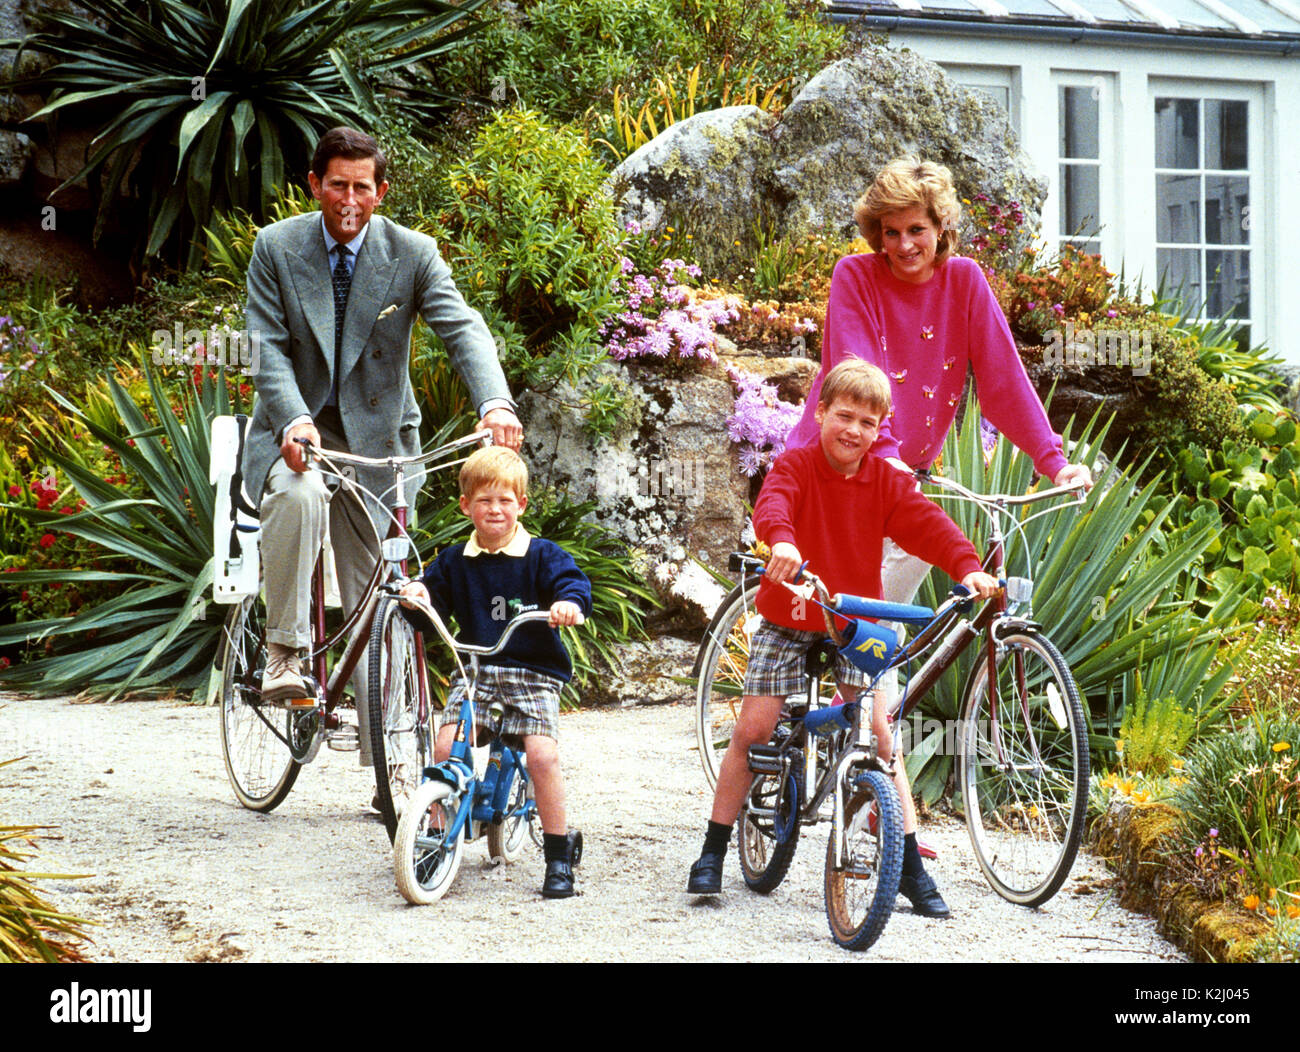 Photo du dossier datée du 01/06/89 du prince et de la princesse de Galles avec ses fils, le prince William, à droite, et le prince Harry se préparent à un voyage à vélo à Tresco pendant leurs vacances dans les îles Scilly, alors que le 20e anniversaire de la mort de Diana sera commémoré jeudi. Banque D'Images